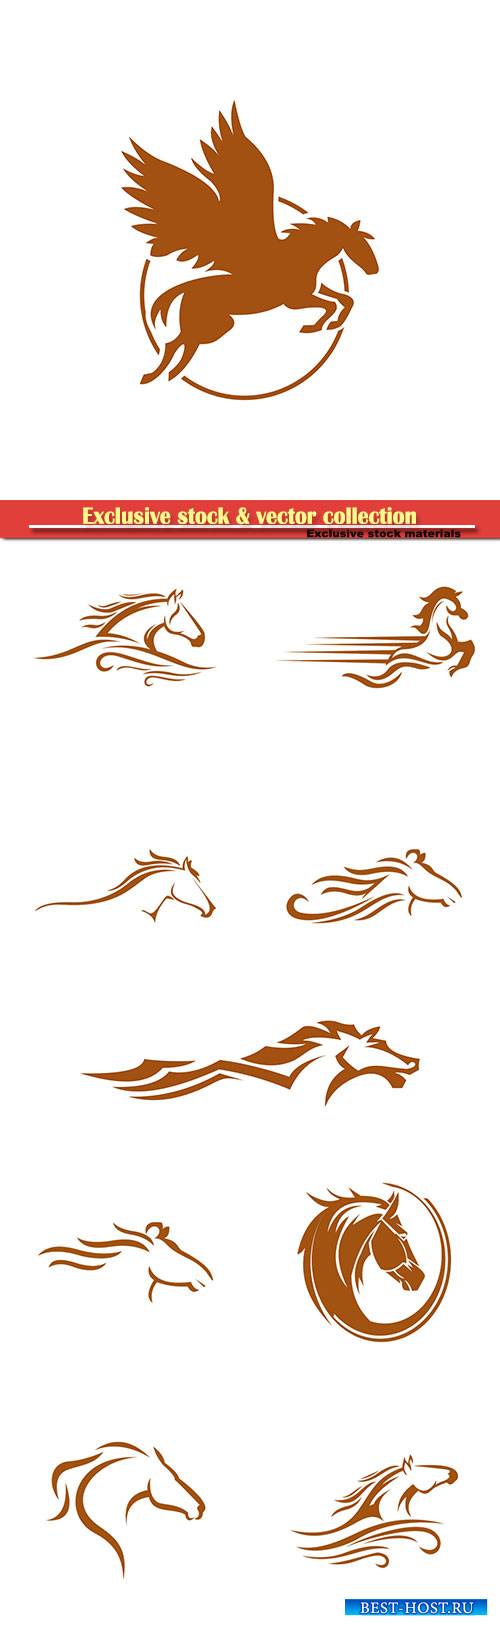 Horse logo vector illustration